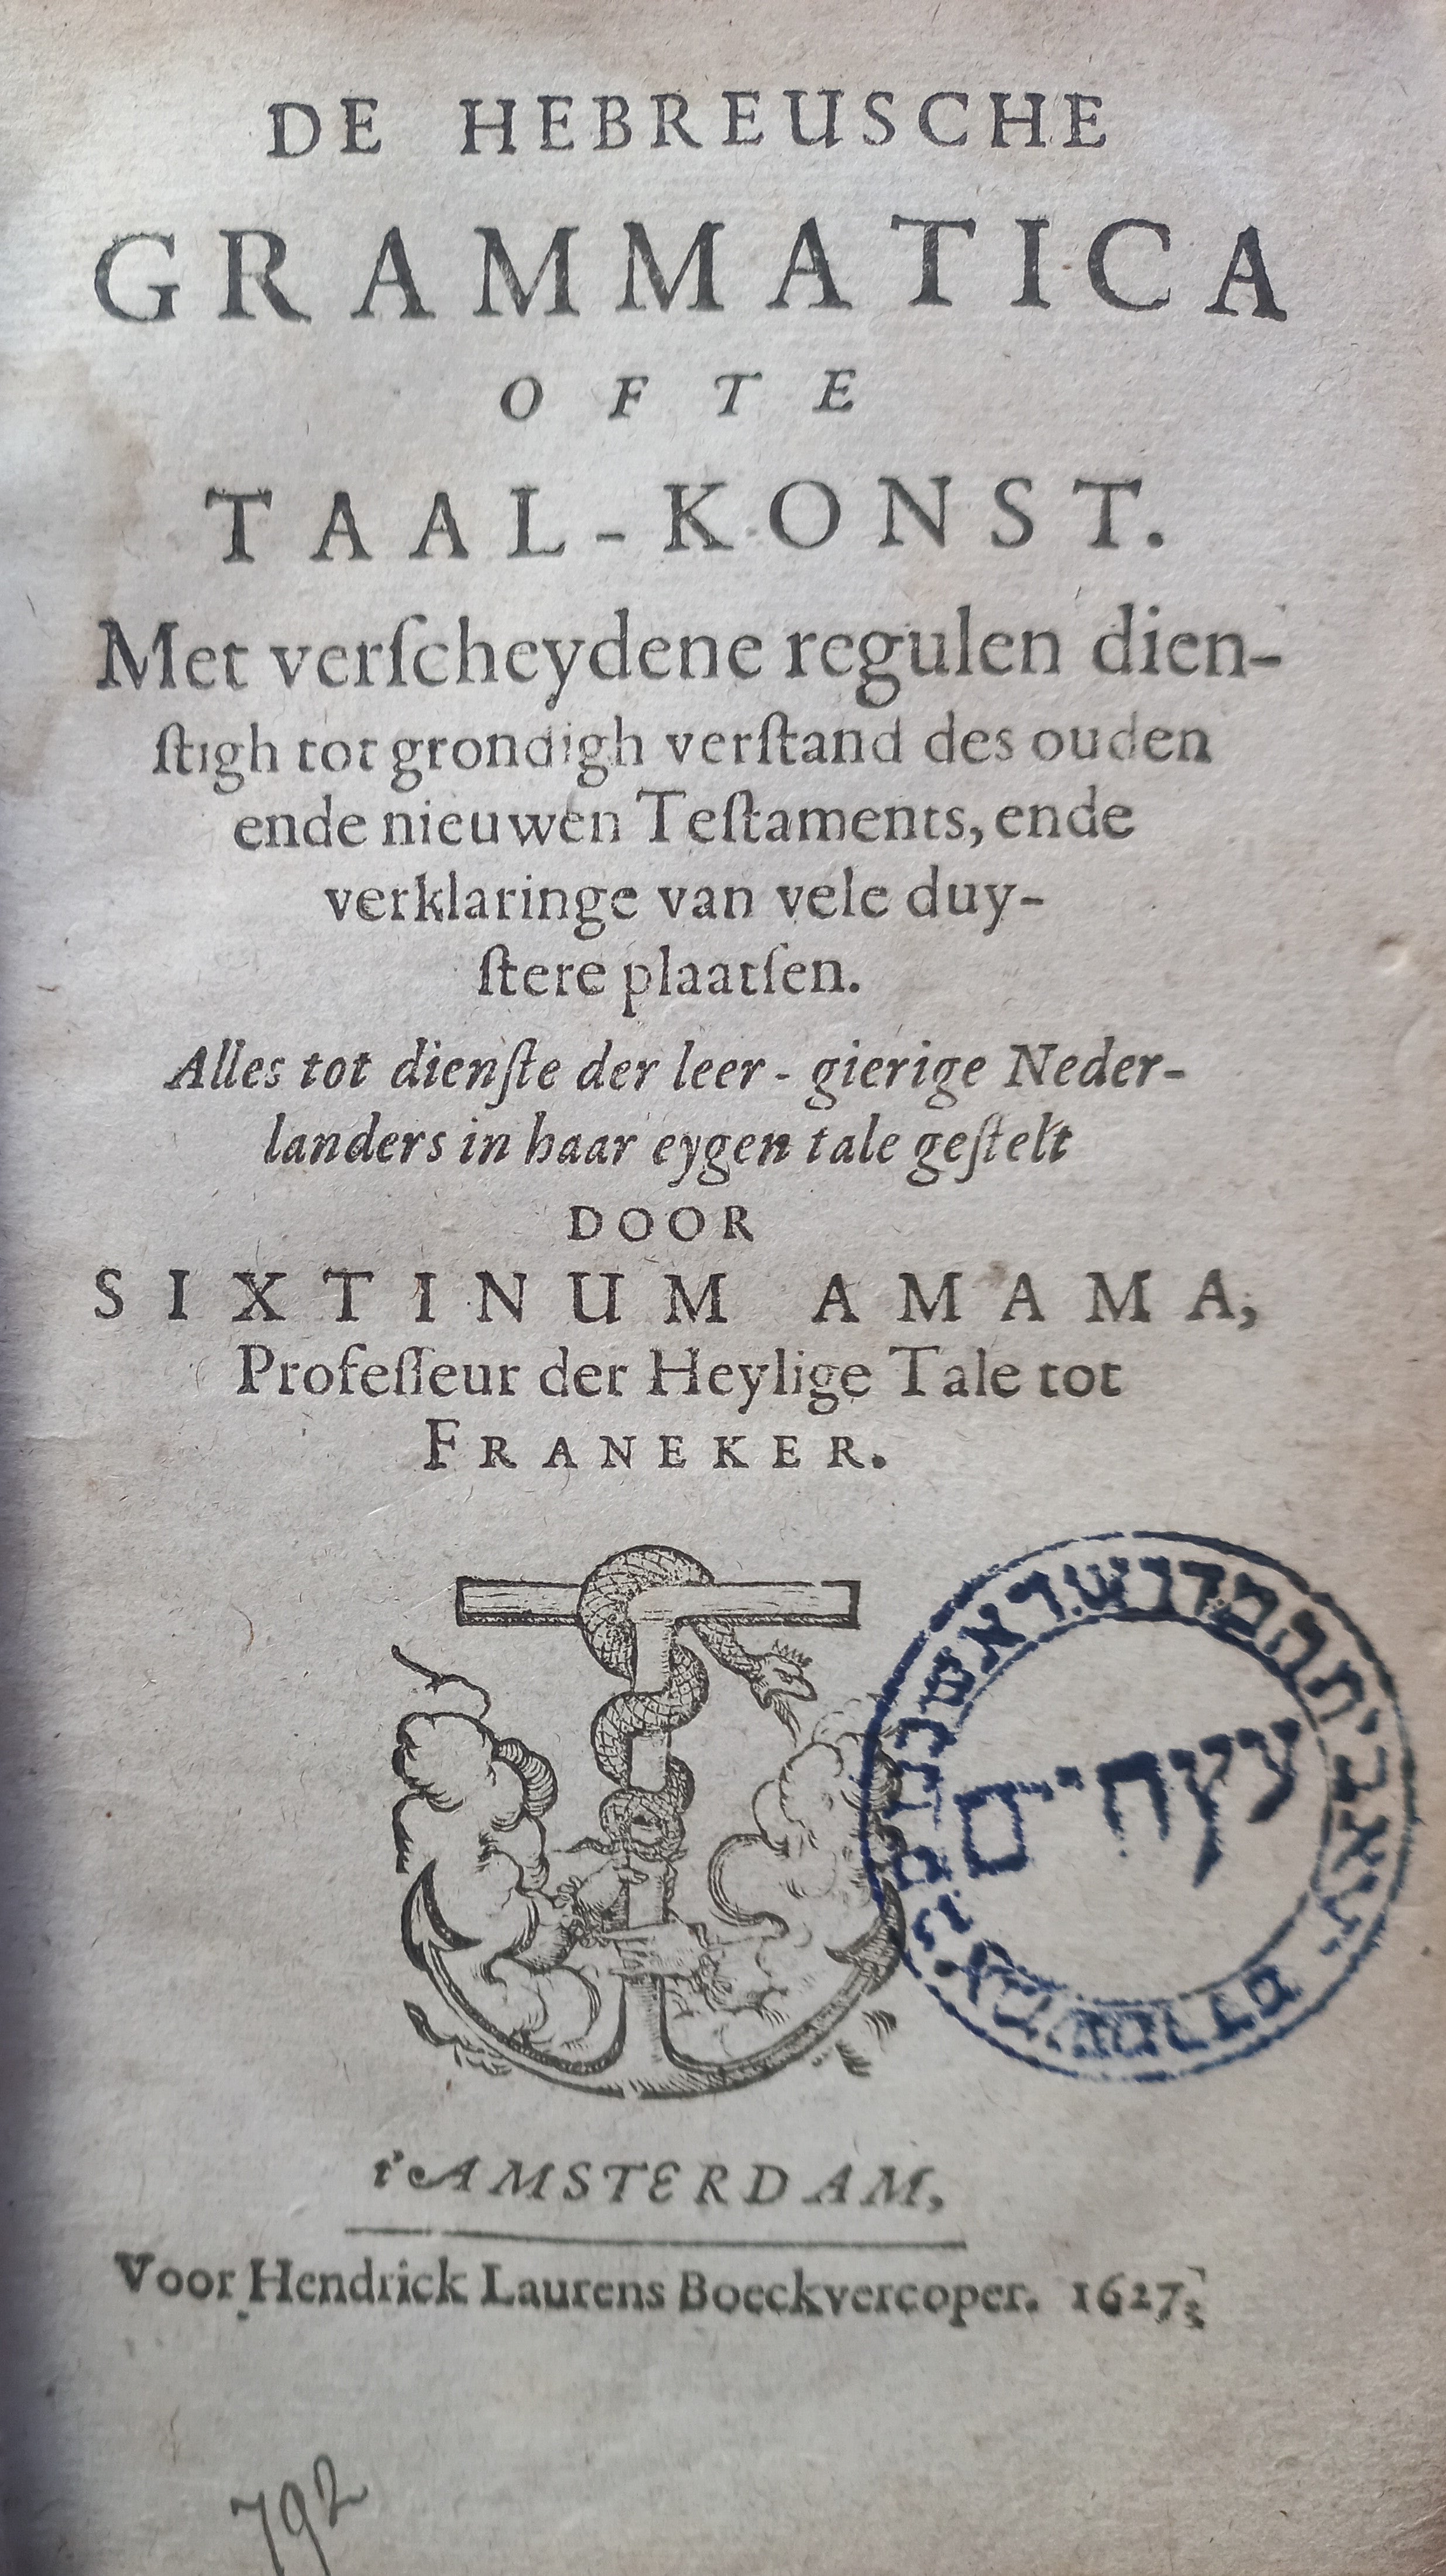 De 'Hebreusche grammatica ofte taal-konst' uit 1627 is een van de pareltjes uit de bibliotheek die het echtpaar Postma-Gosker in 2012 aan de VU schonk. 